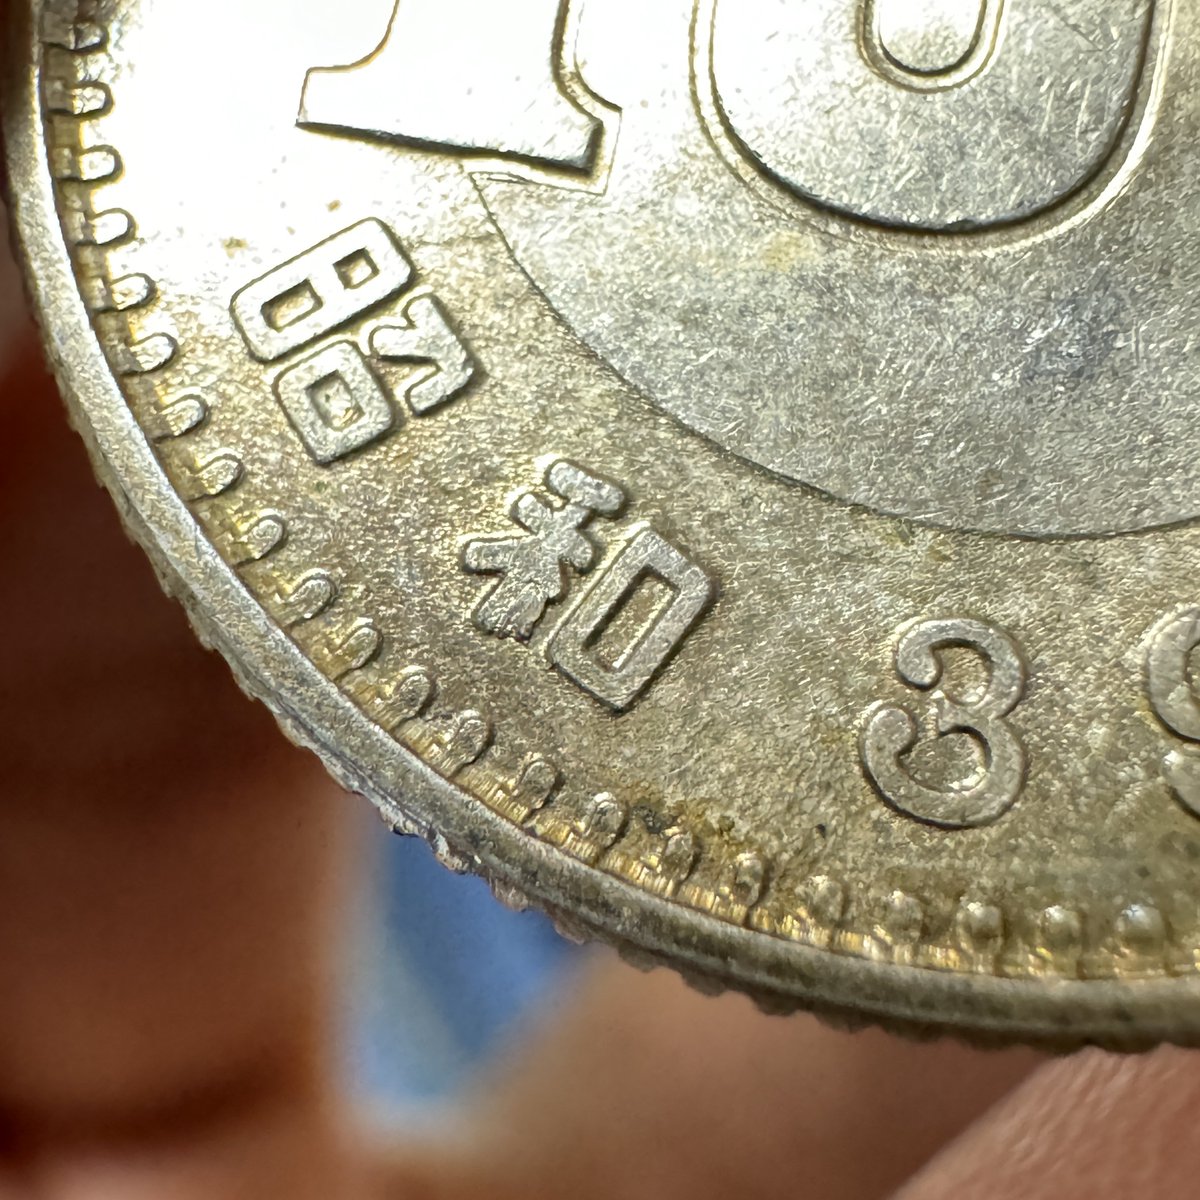 【新発見】
この位置の鋳詰まりは東京オリンピック100円銀貨としては未発見です。
(31万枚見た内の1枚目)

そもそも五輪百円自体、記念硬貨であるため刻印が安定しており、あまり手変りがありません。